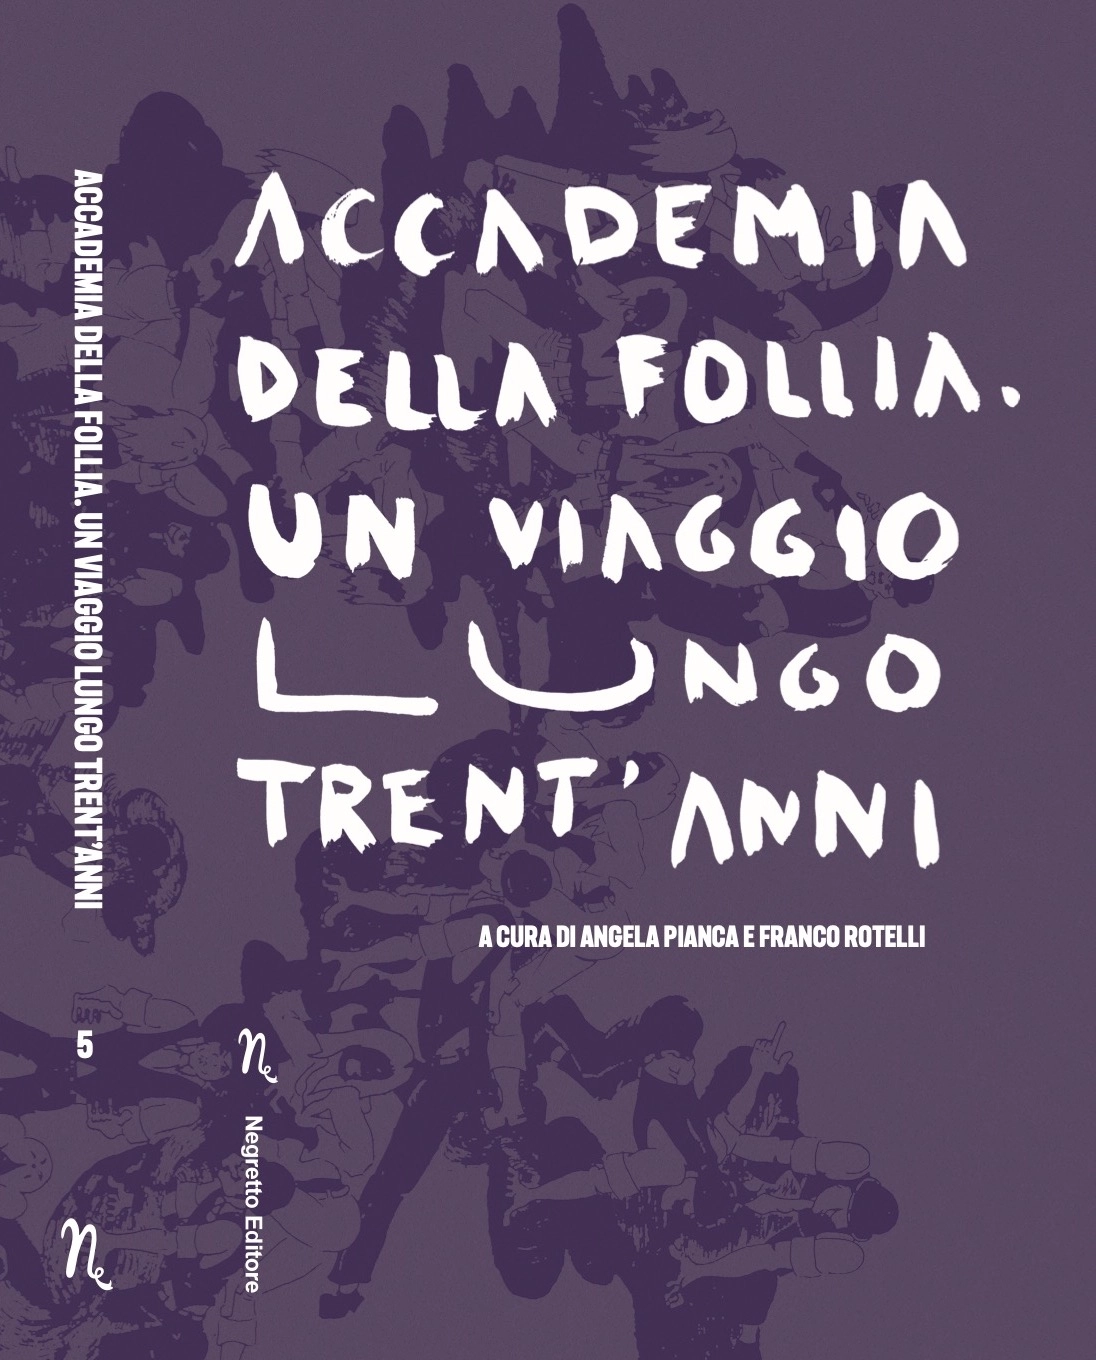 Foto 1 - Angela Pianca e Franco Rotelli: il libro Accademia della Follia 